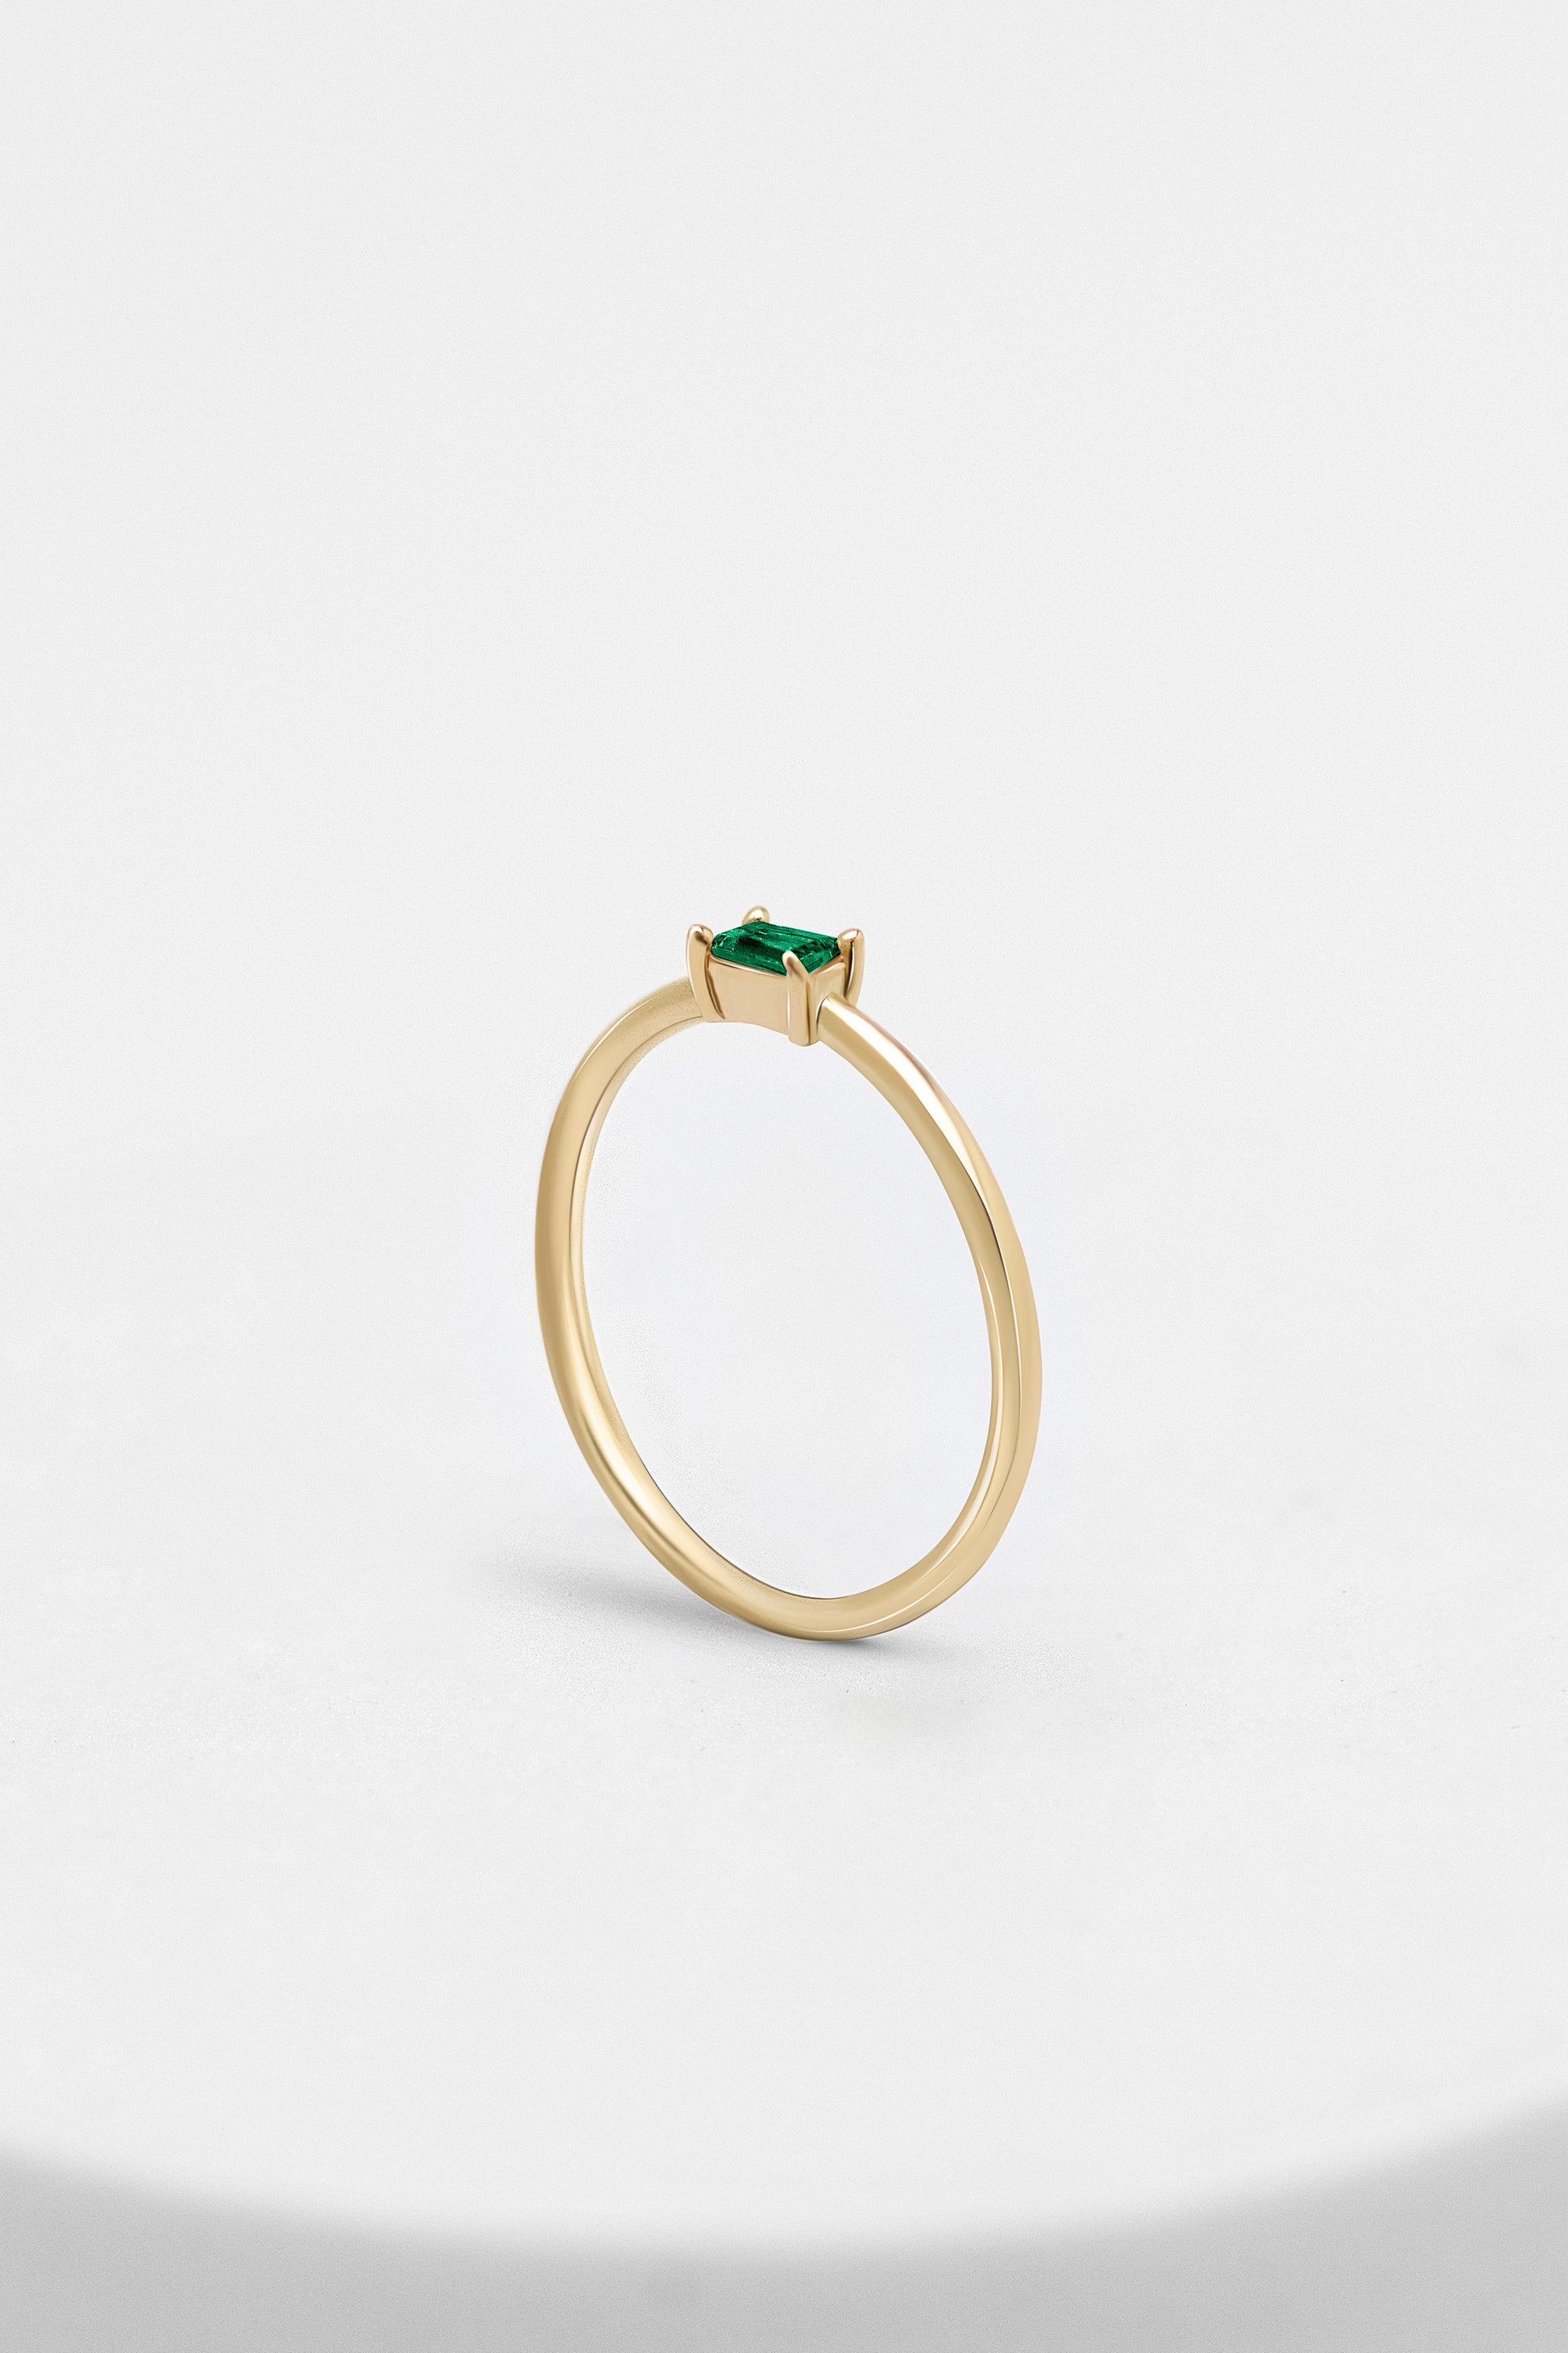  Petite Baguette Emerald Ring